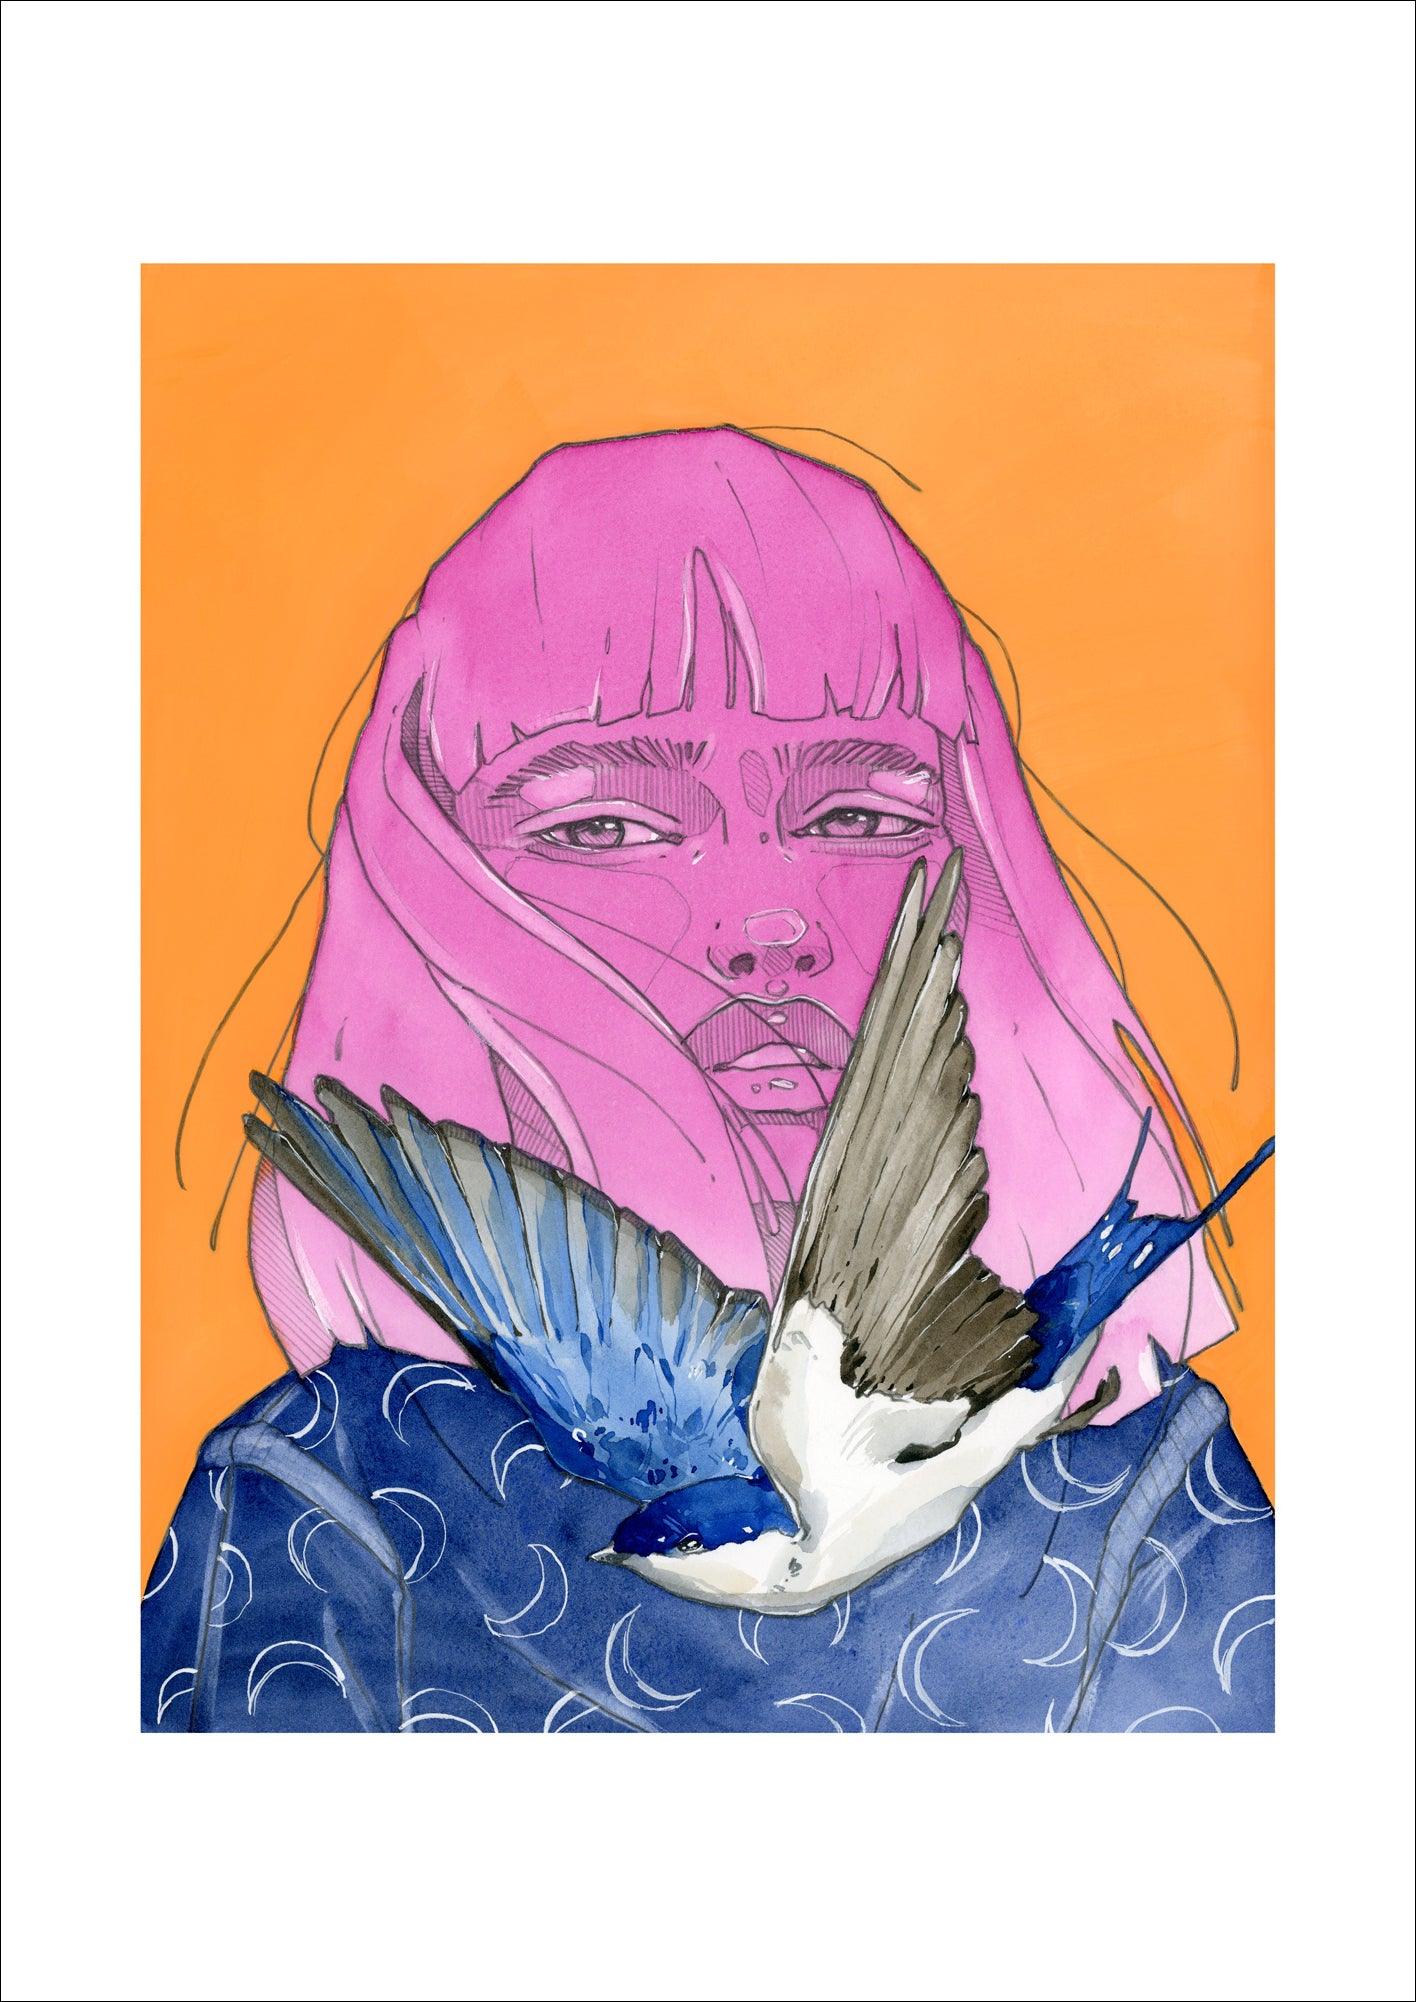 Barn Swallow - Polina Bright